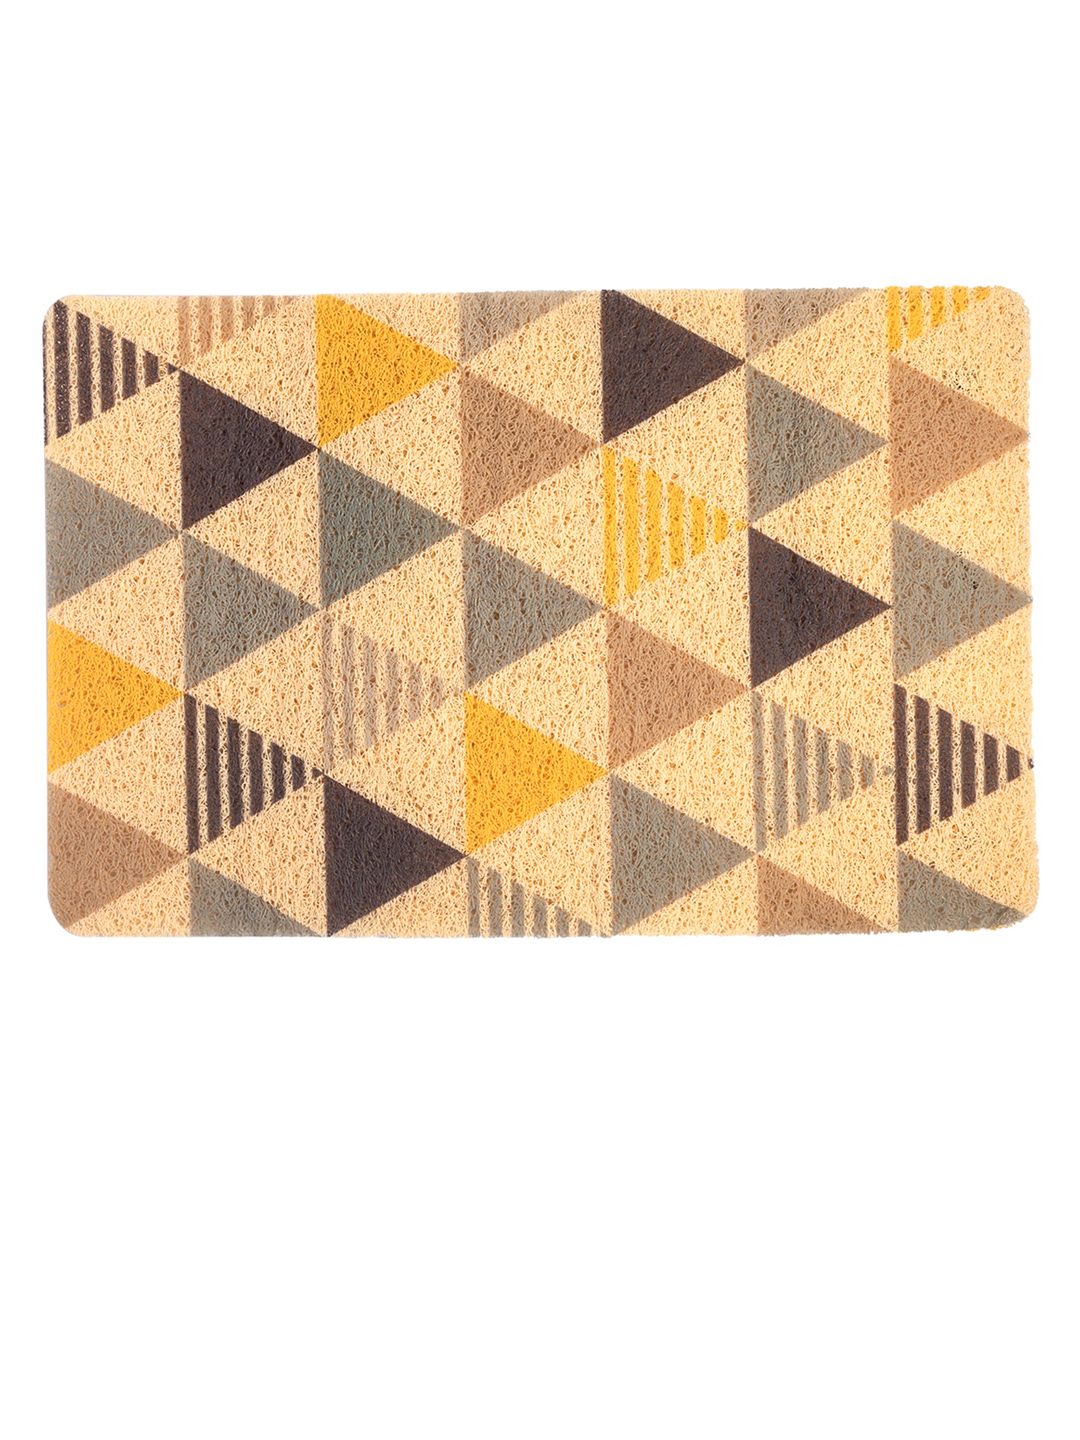 MARKET99 Brown Printed Indoor & Outdoor Doormats Price in India